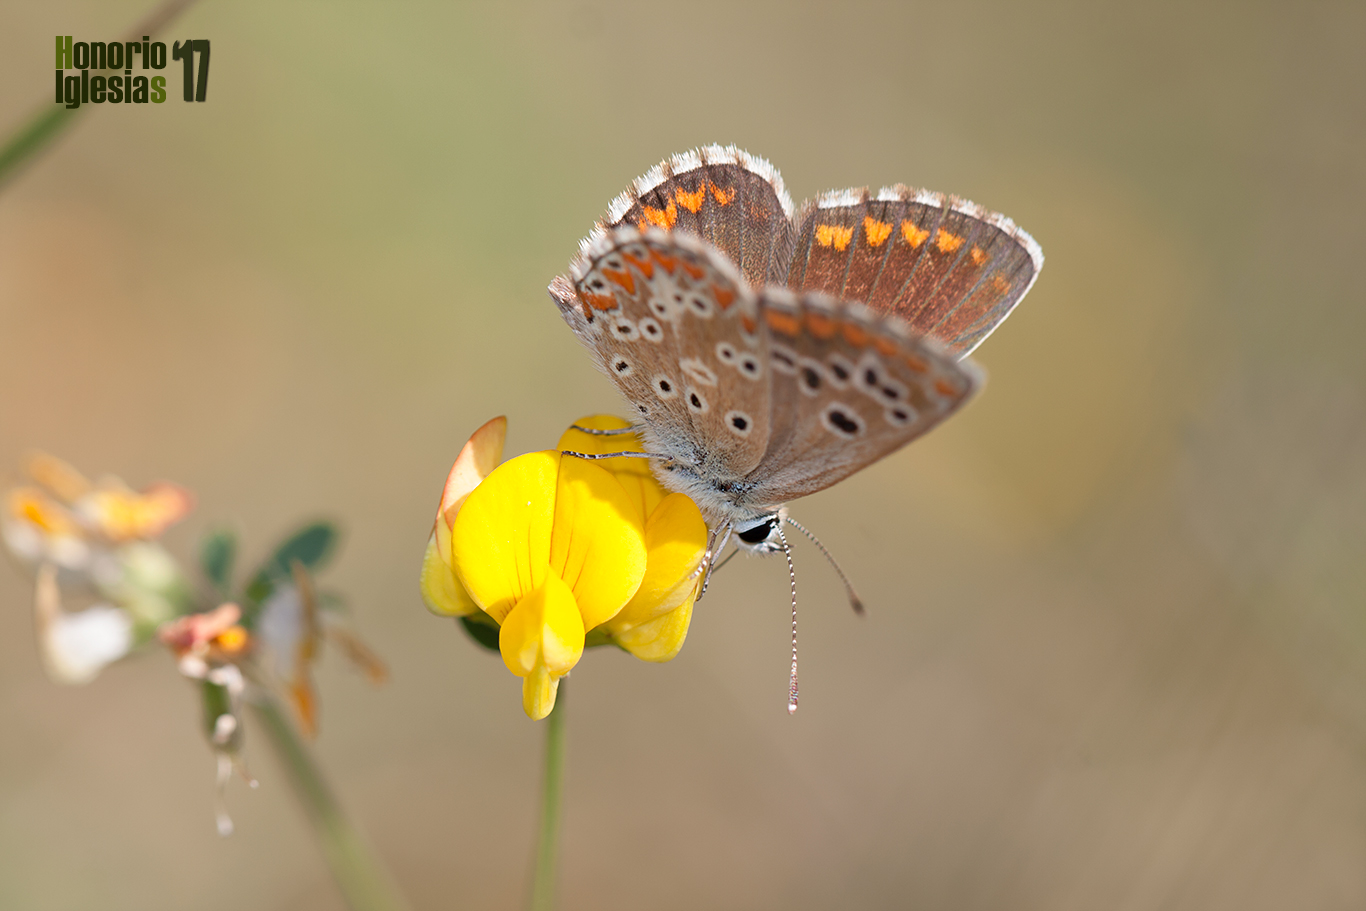 Ejemplar de mariposa morena común (Aricia cramera) , tanto los machos como las hembras de esta mariposa tienen el anverso de color marrón.